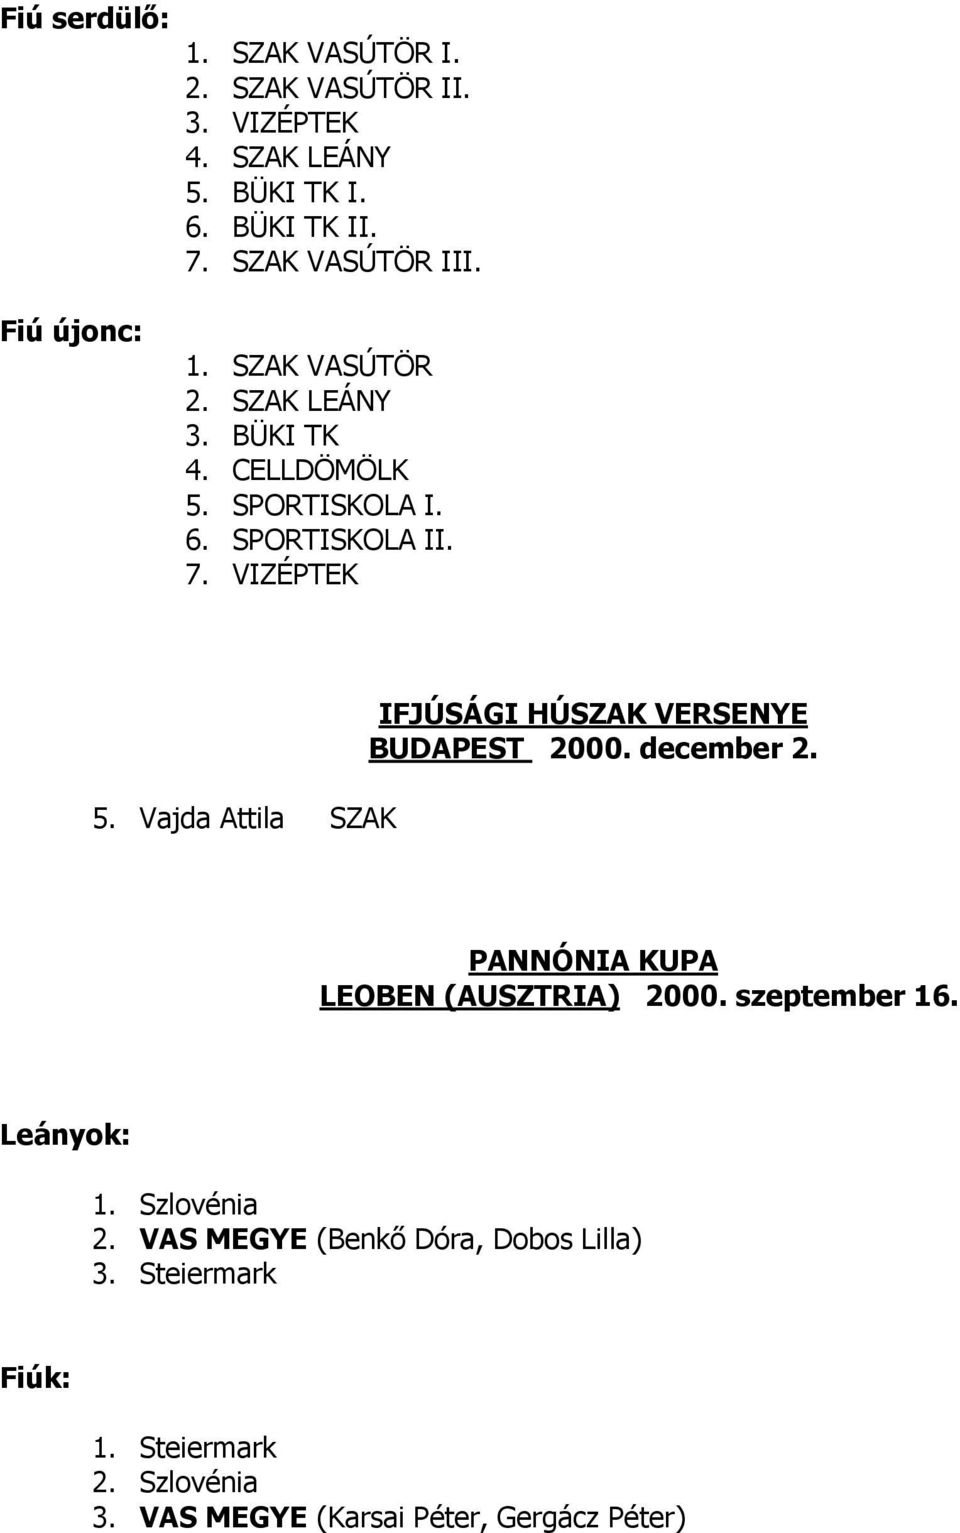 Vajda Attila SZAK IFJÚSÁGI HÚSZAK VERSENYE BUDAPEST 2000. december 2. PANNÓNIA KUPA LEOBEN (AUSZTRIA) 2000. szeptember 16.